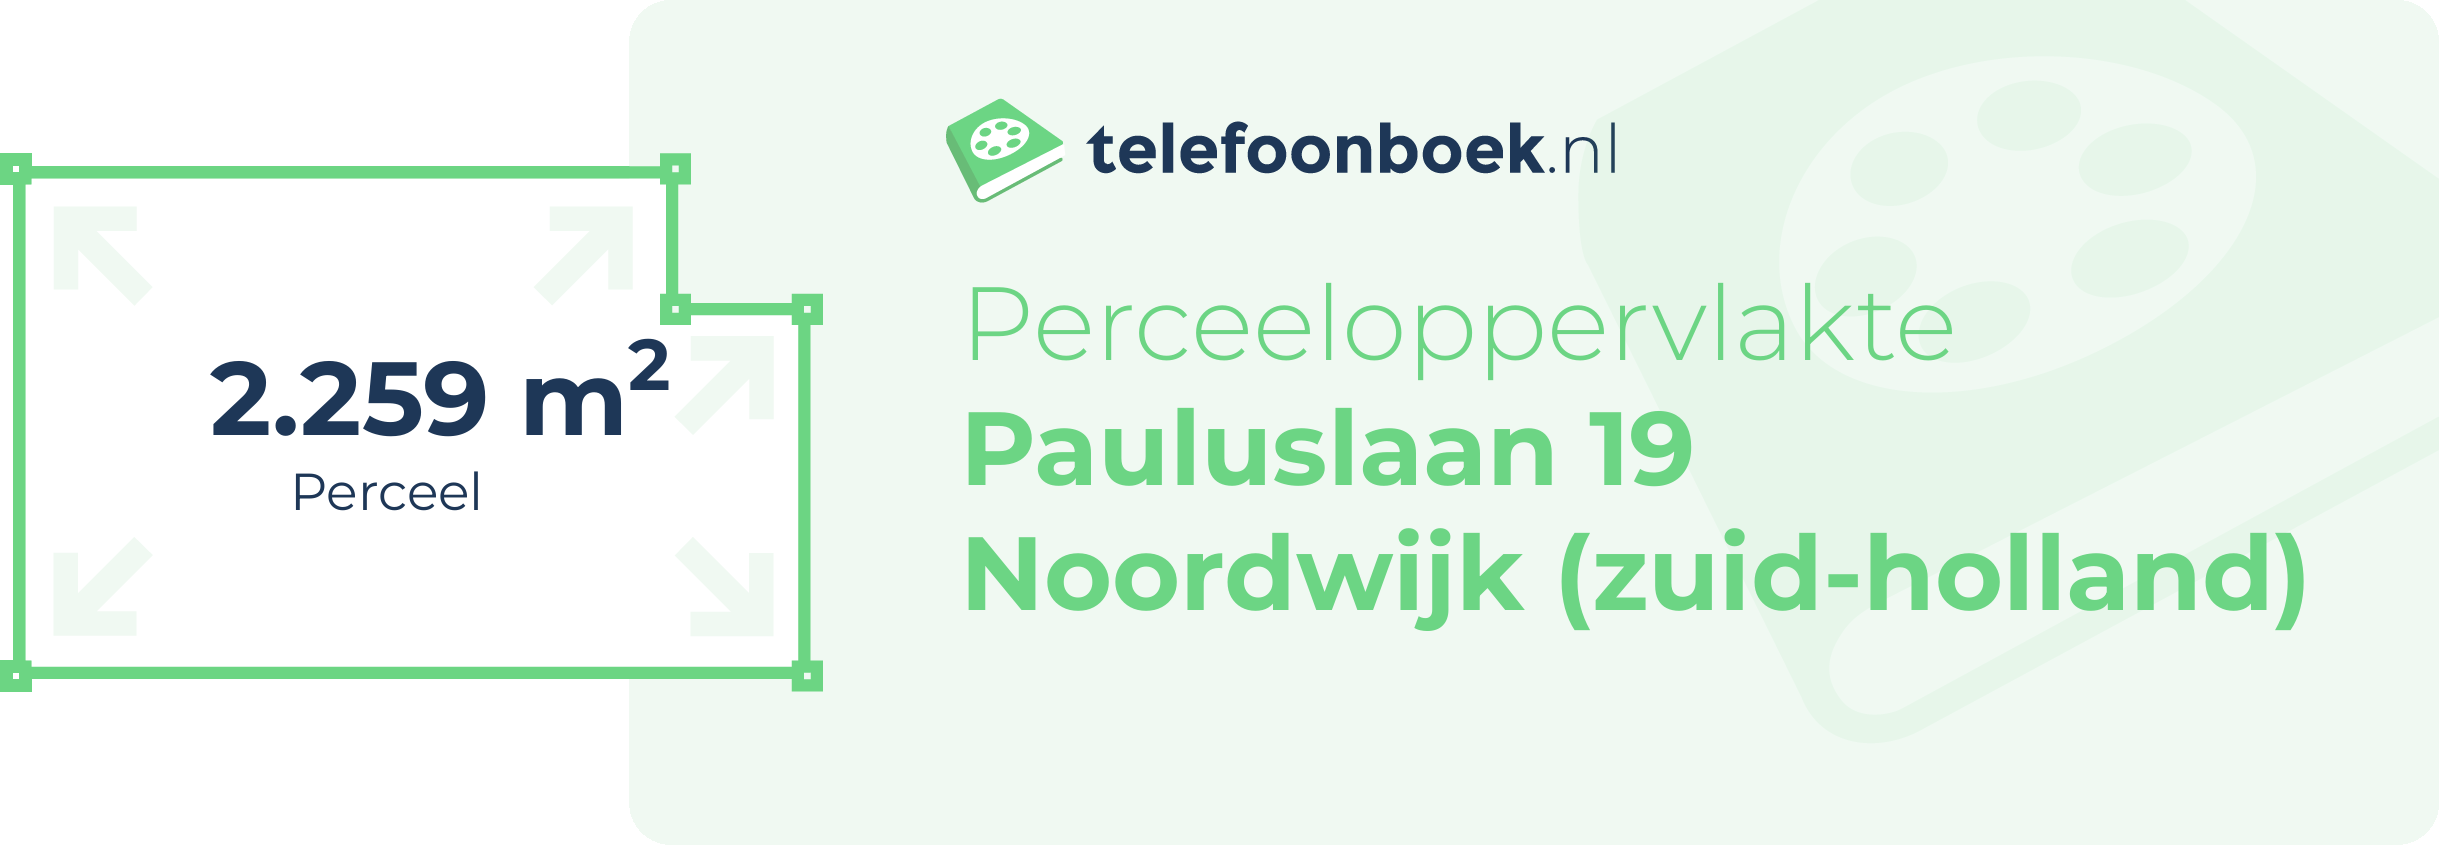 Perceeloppervlakte Pauluslaan 19 Noordwijk (Zuid-Holland)